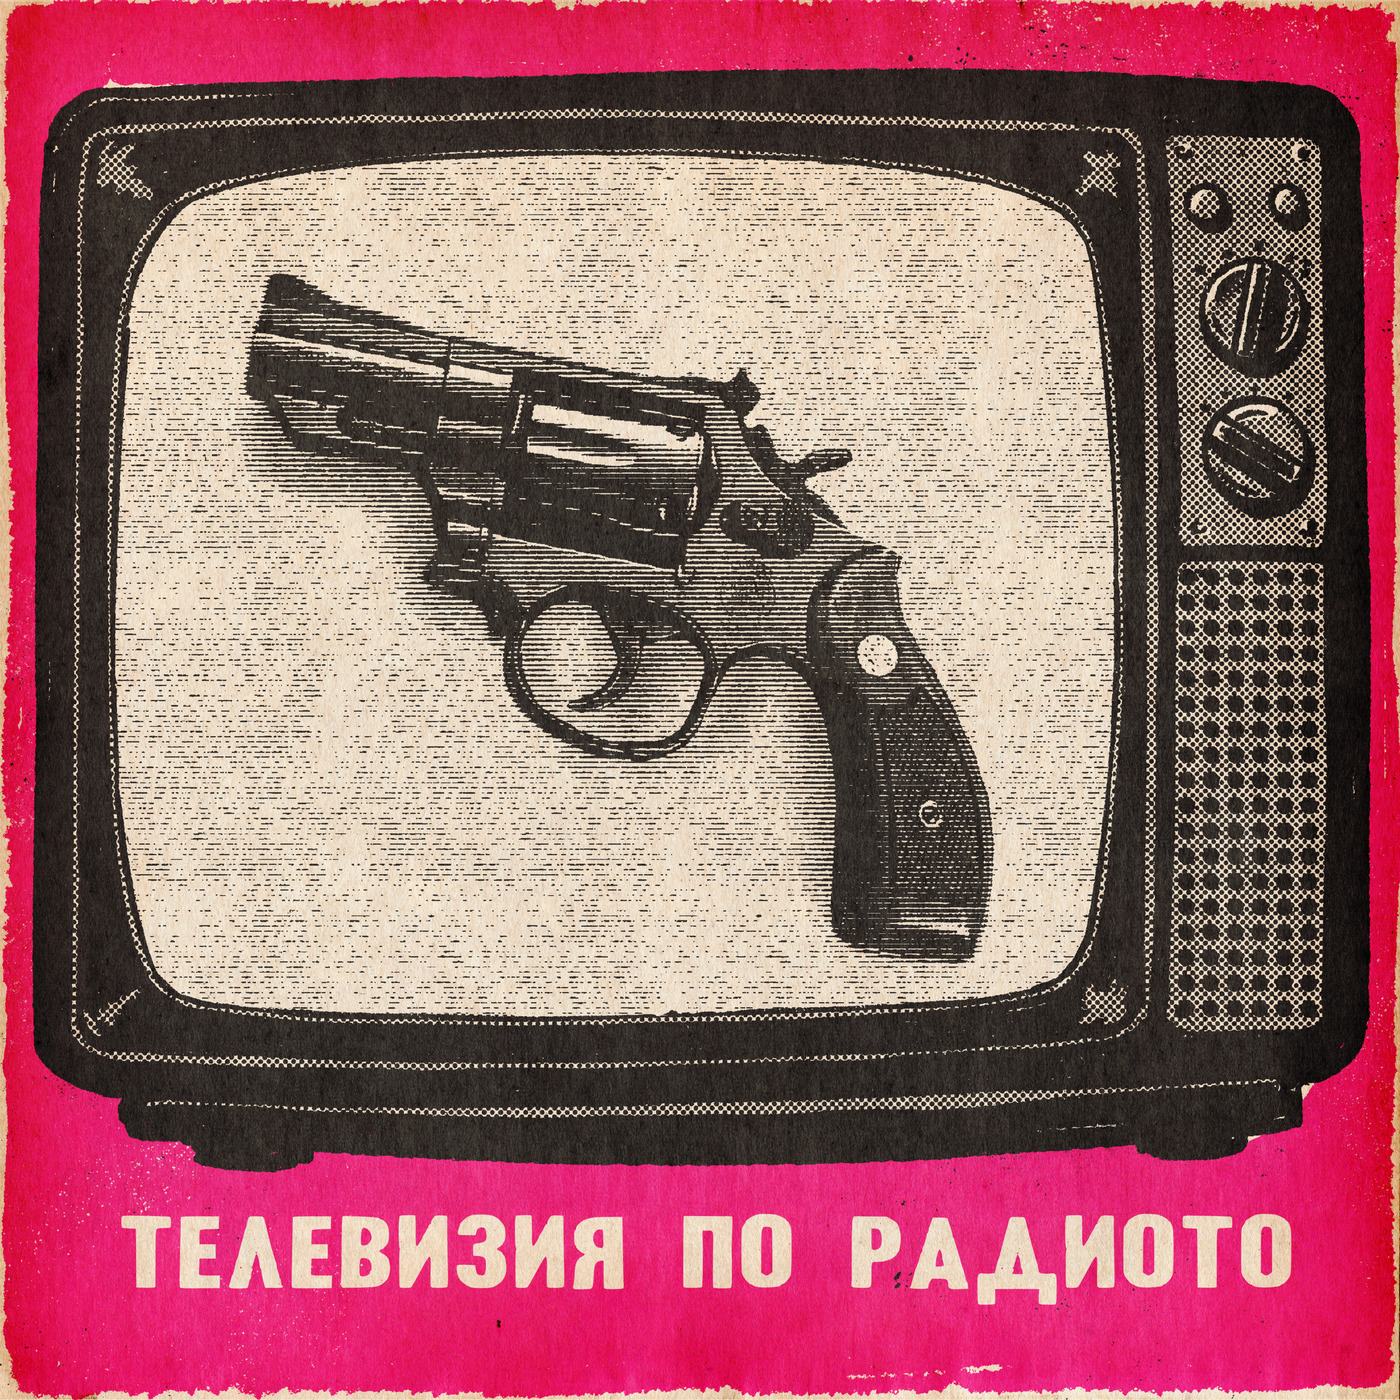 Ден и Телевизия по радиото: Телевизия по радиото: постановки, провокации, пистолети  